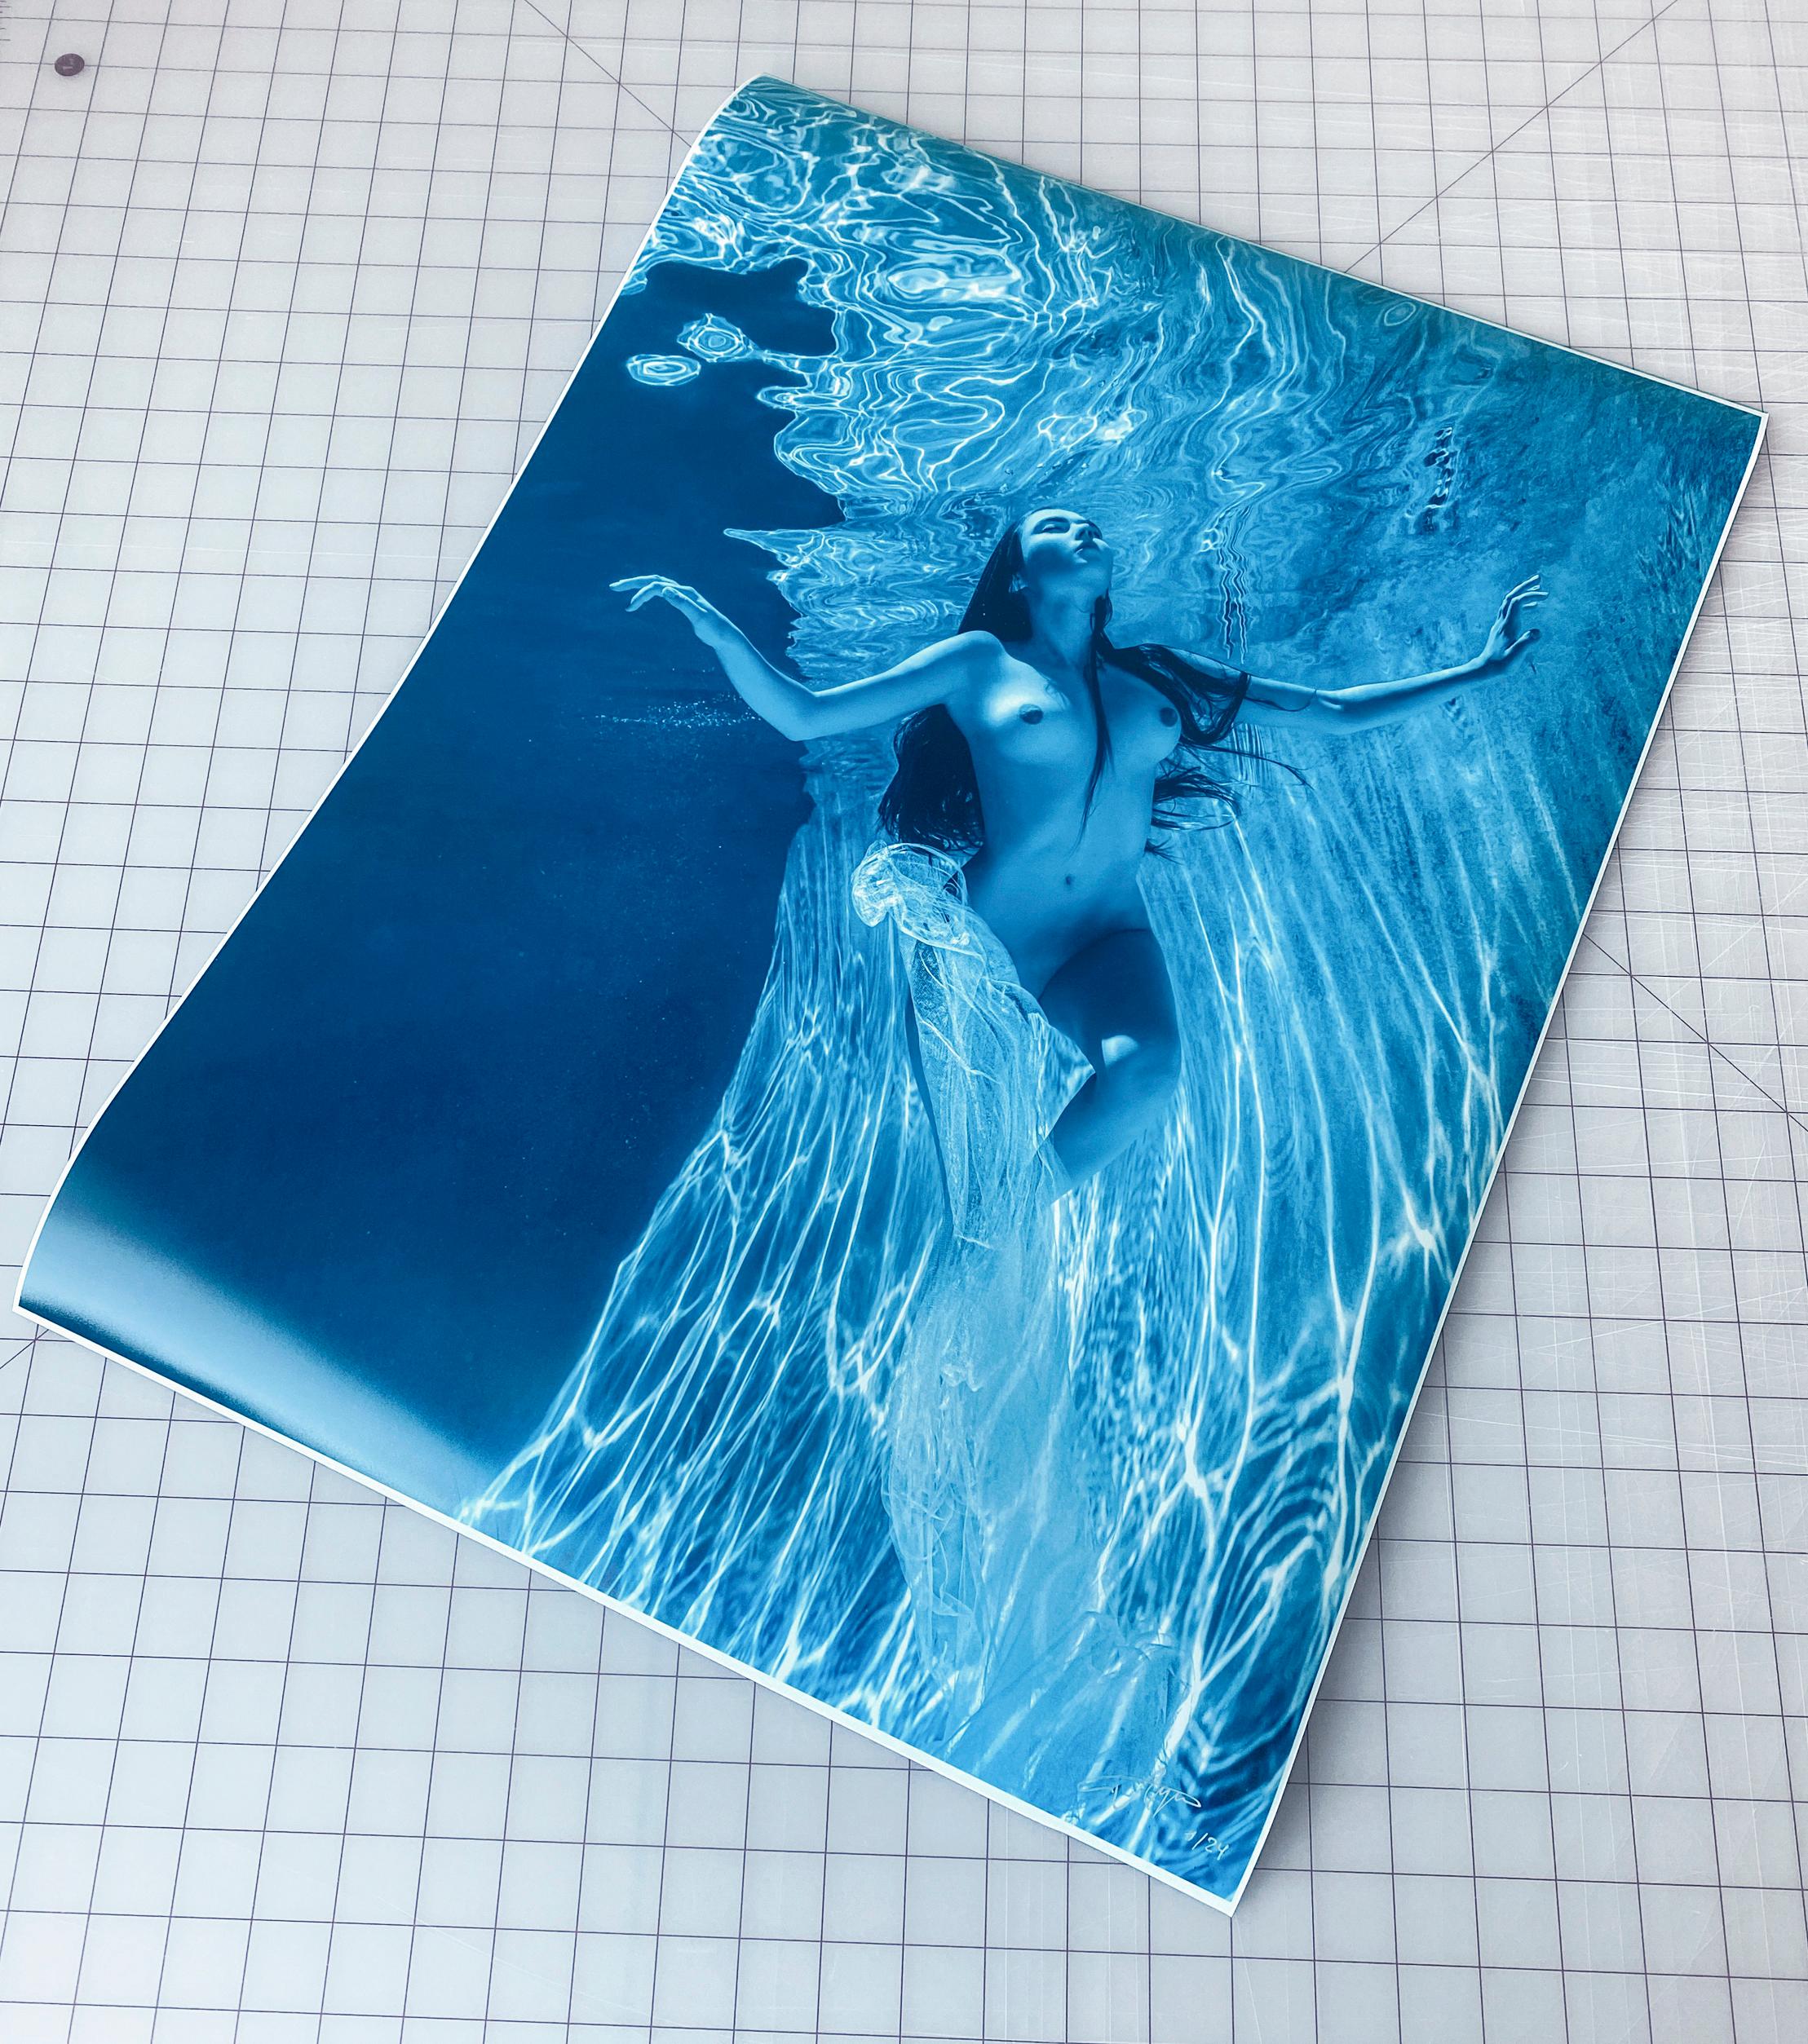 Photographie sous-marine d'une jeune femme nue aux cheveux bruns dans une piscine.  Une écharpe en soie transparente glissait sur ses épaules, ouvrant les seins et couvrant partiellement les hanches et le pubis. Il s'agit d'une photographie